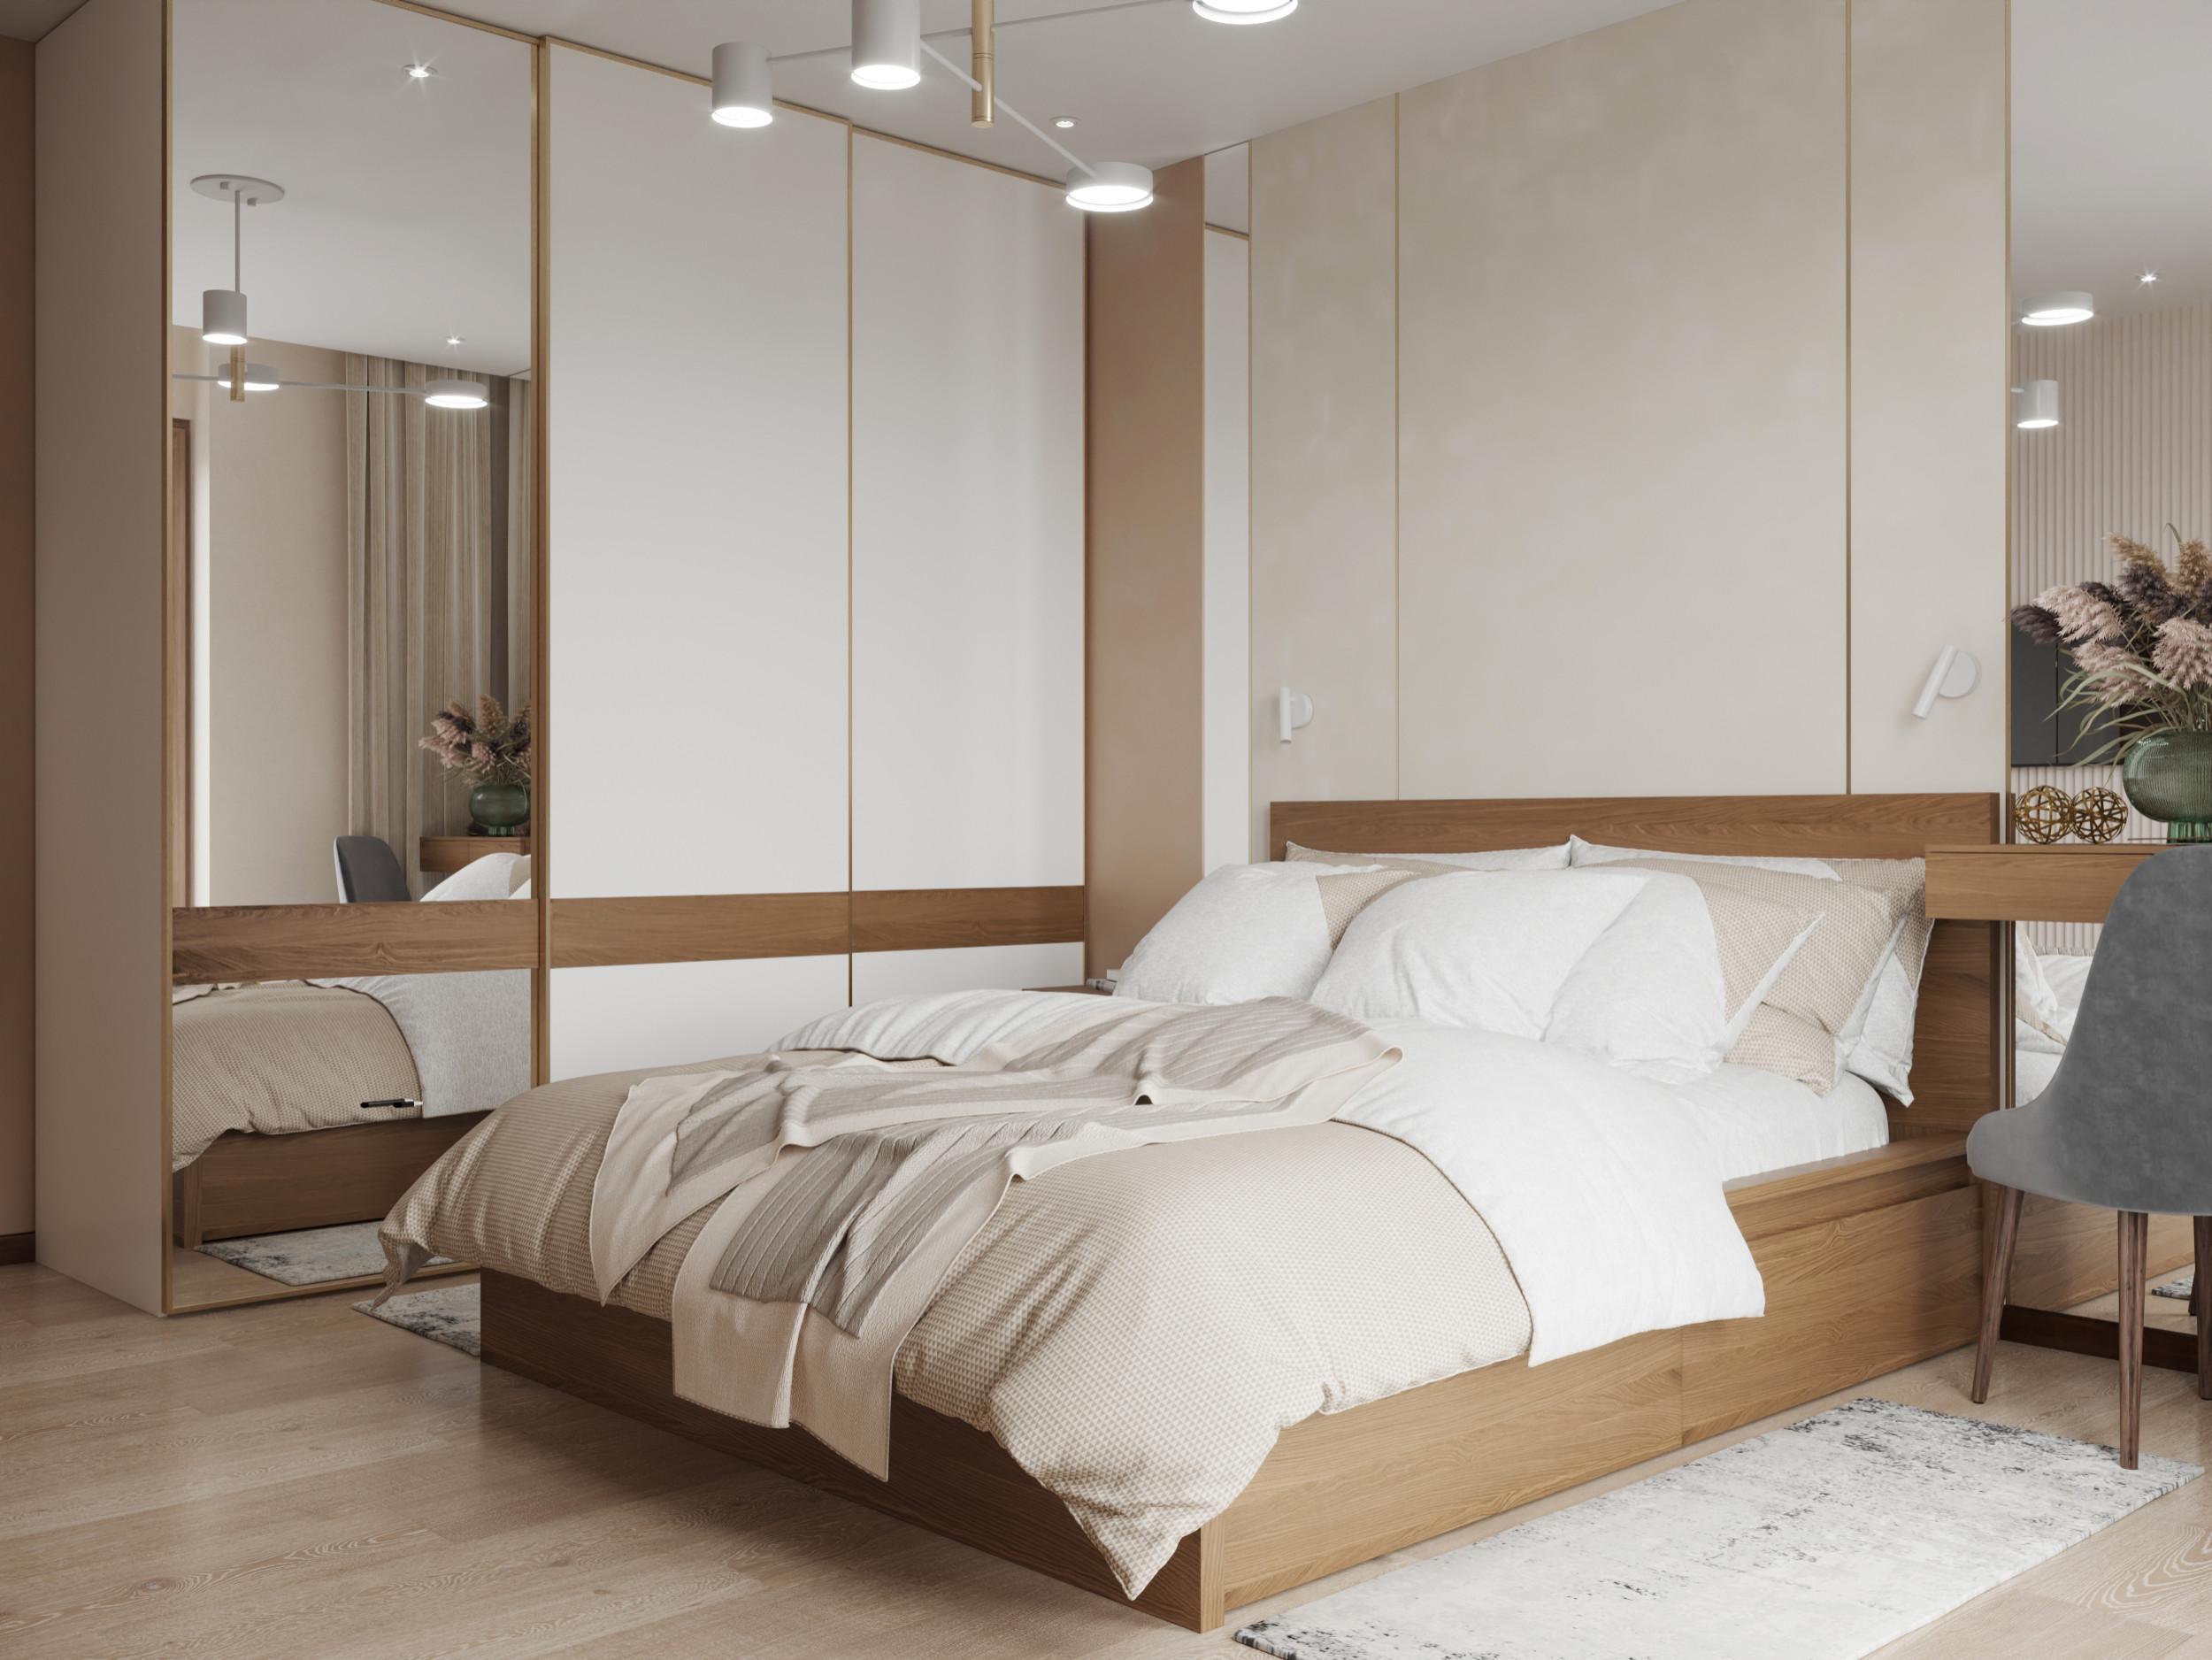 Интерьер спальни с бра над кроватью, подсветкой светодиодной и светильниками над кроватью в современном стиле и в стиле лофт